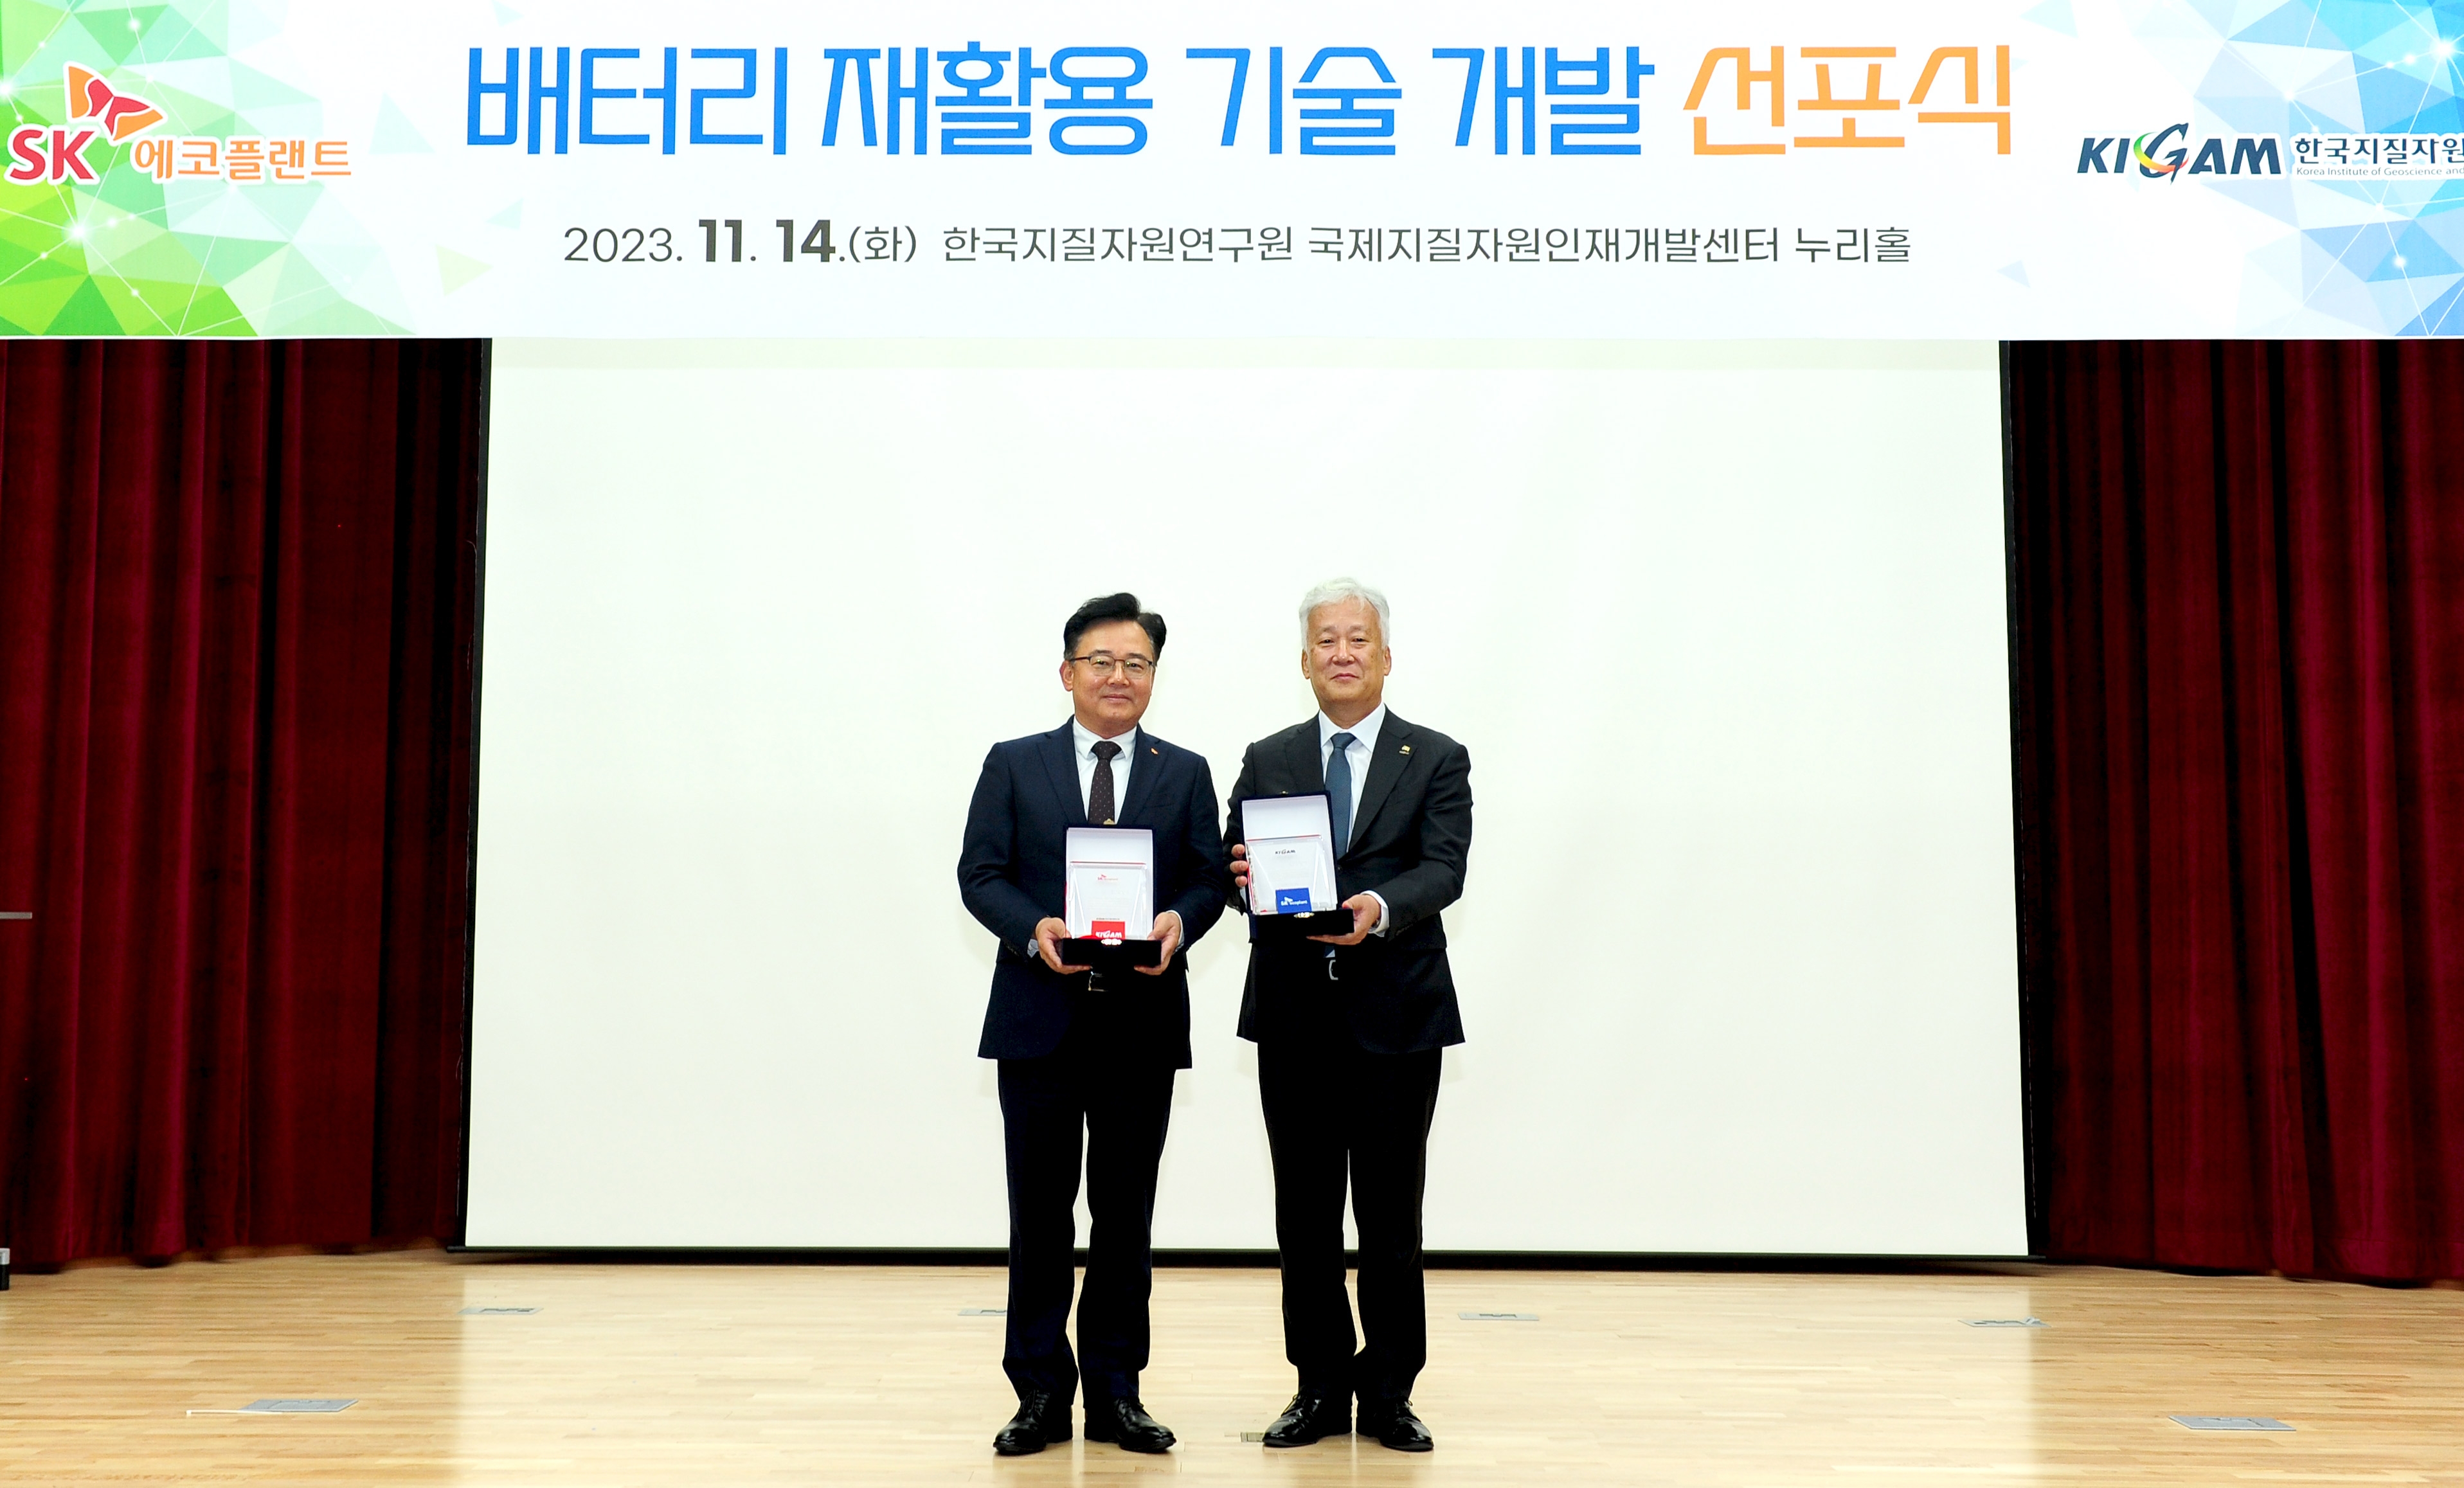 박경일 SK에코플랜트 사장(왼쪽), 이평구 한국지질자원연구원 원장이 기념 촬영을 하는 모습.(사진=SK에코플랜트)